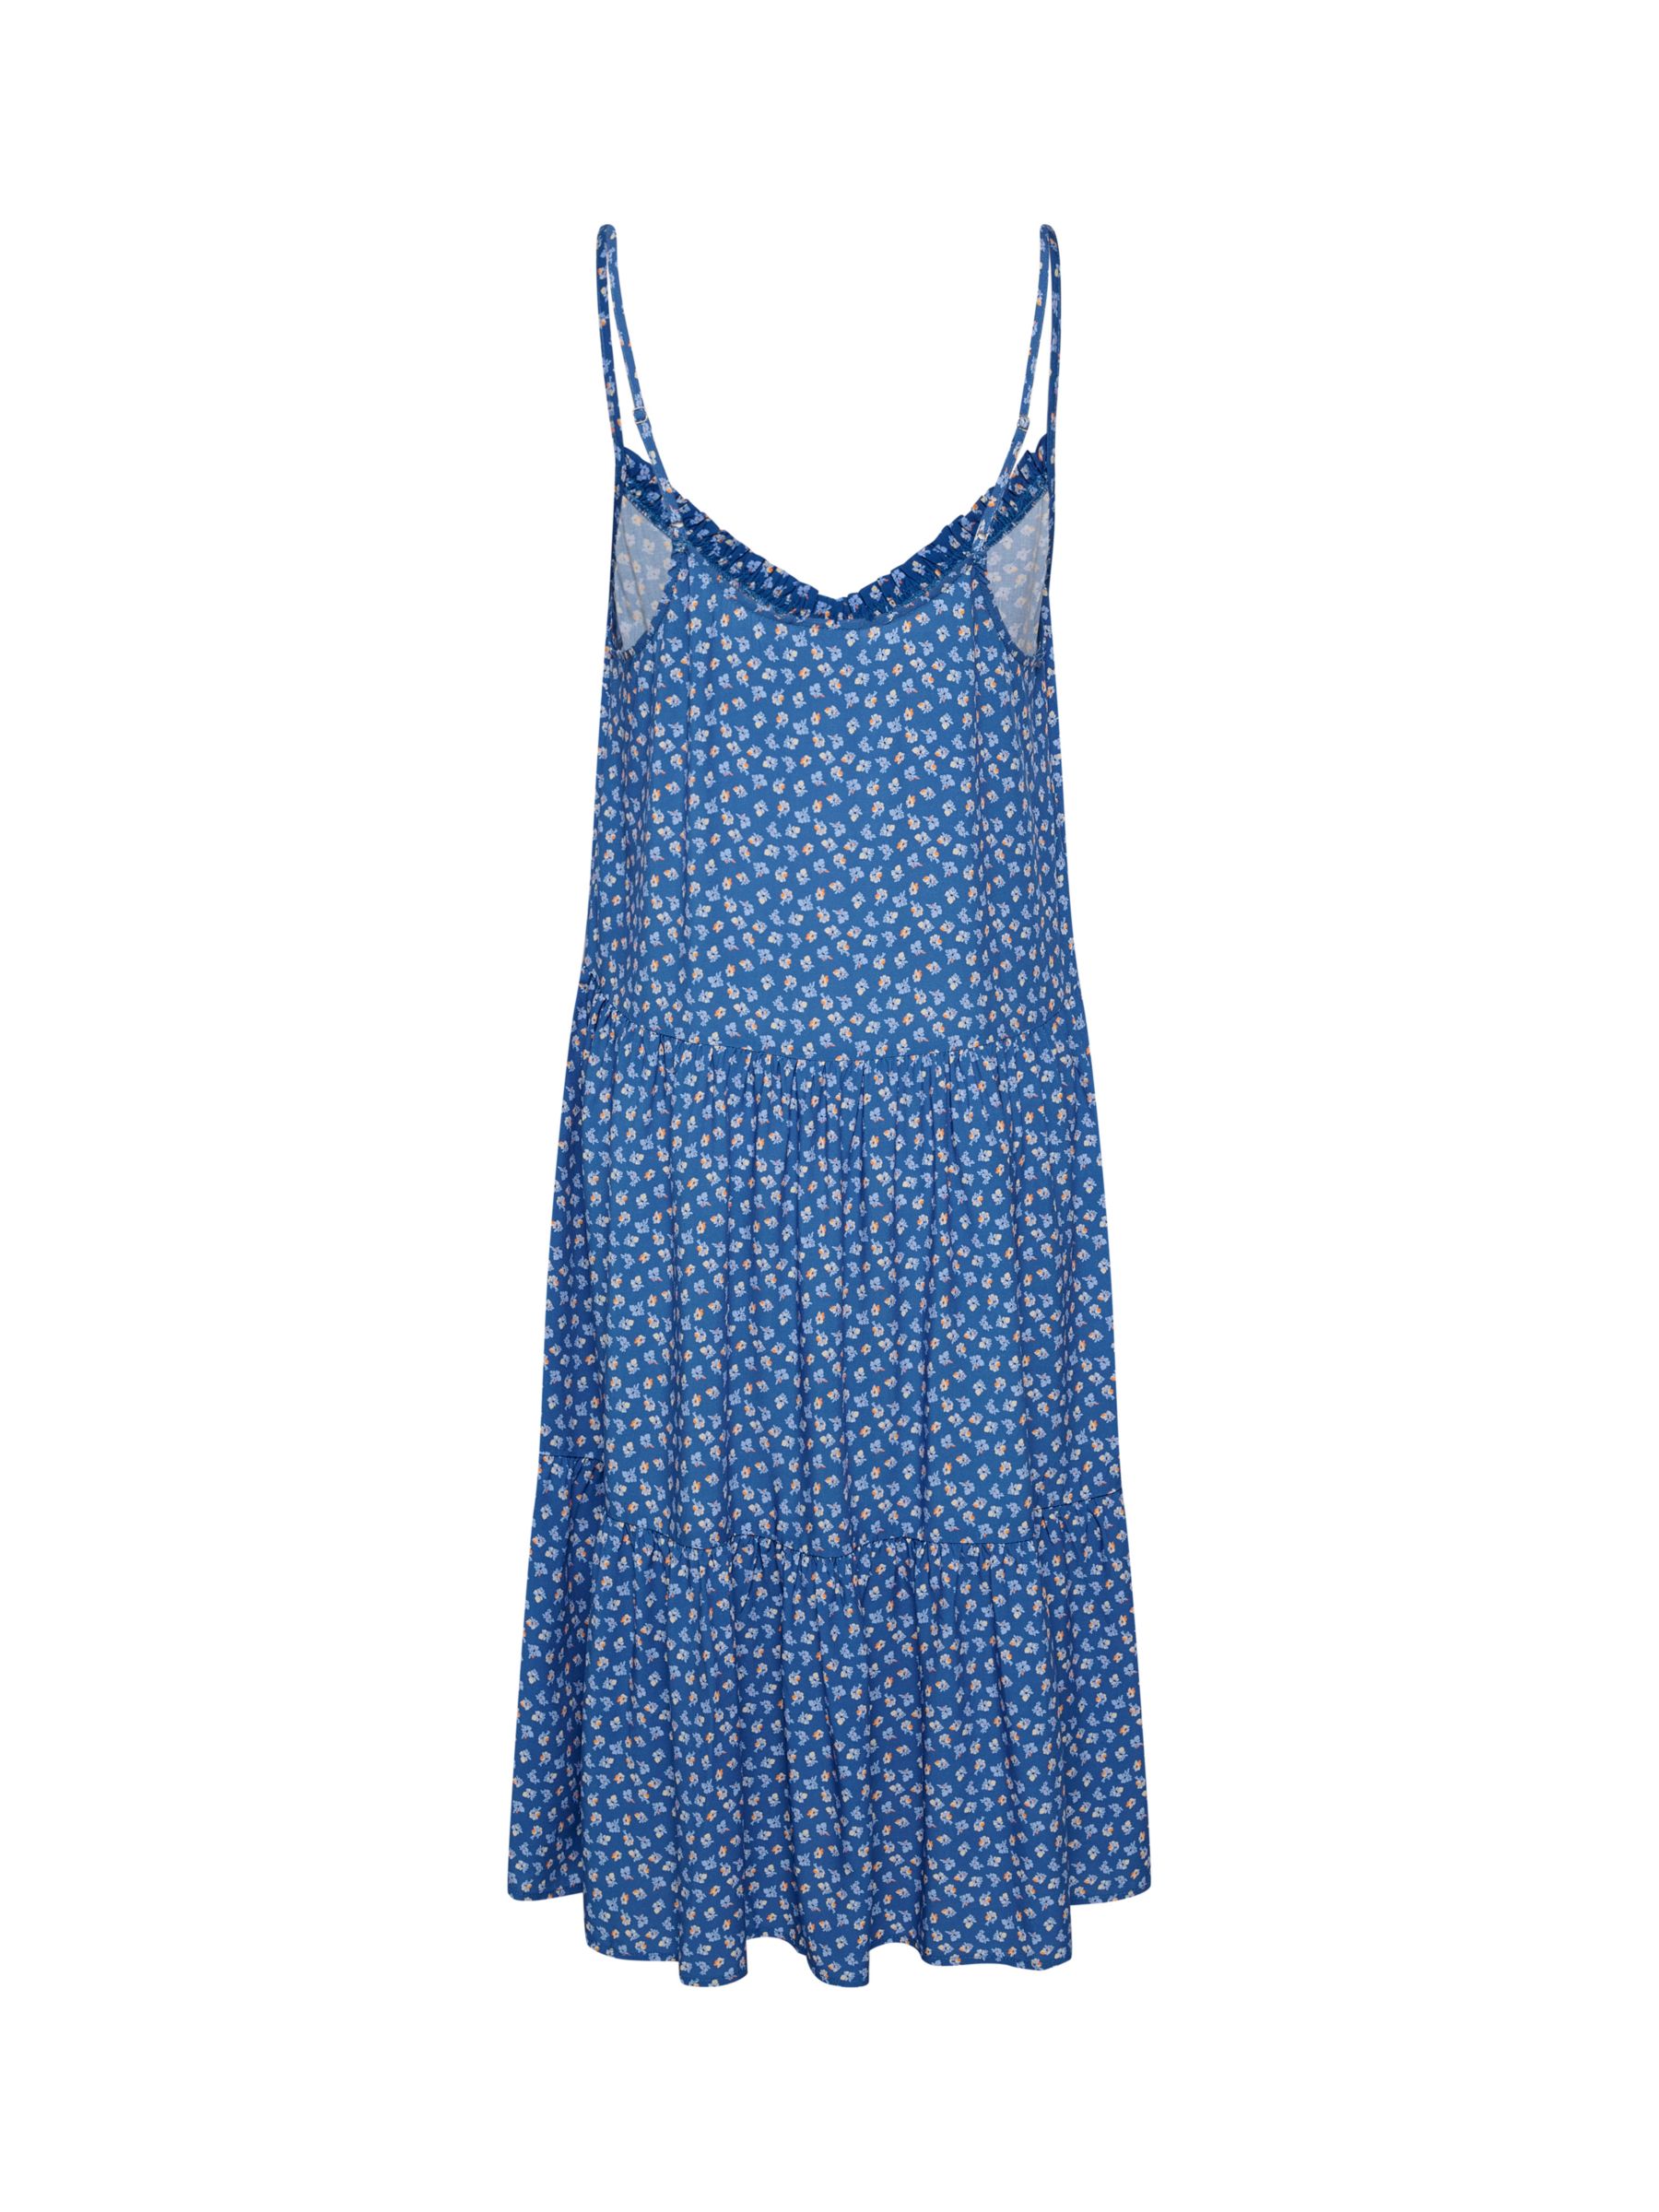 Saint Tropez Eda Strappy Dress, Blue Ditsy Floral, XXL